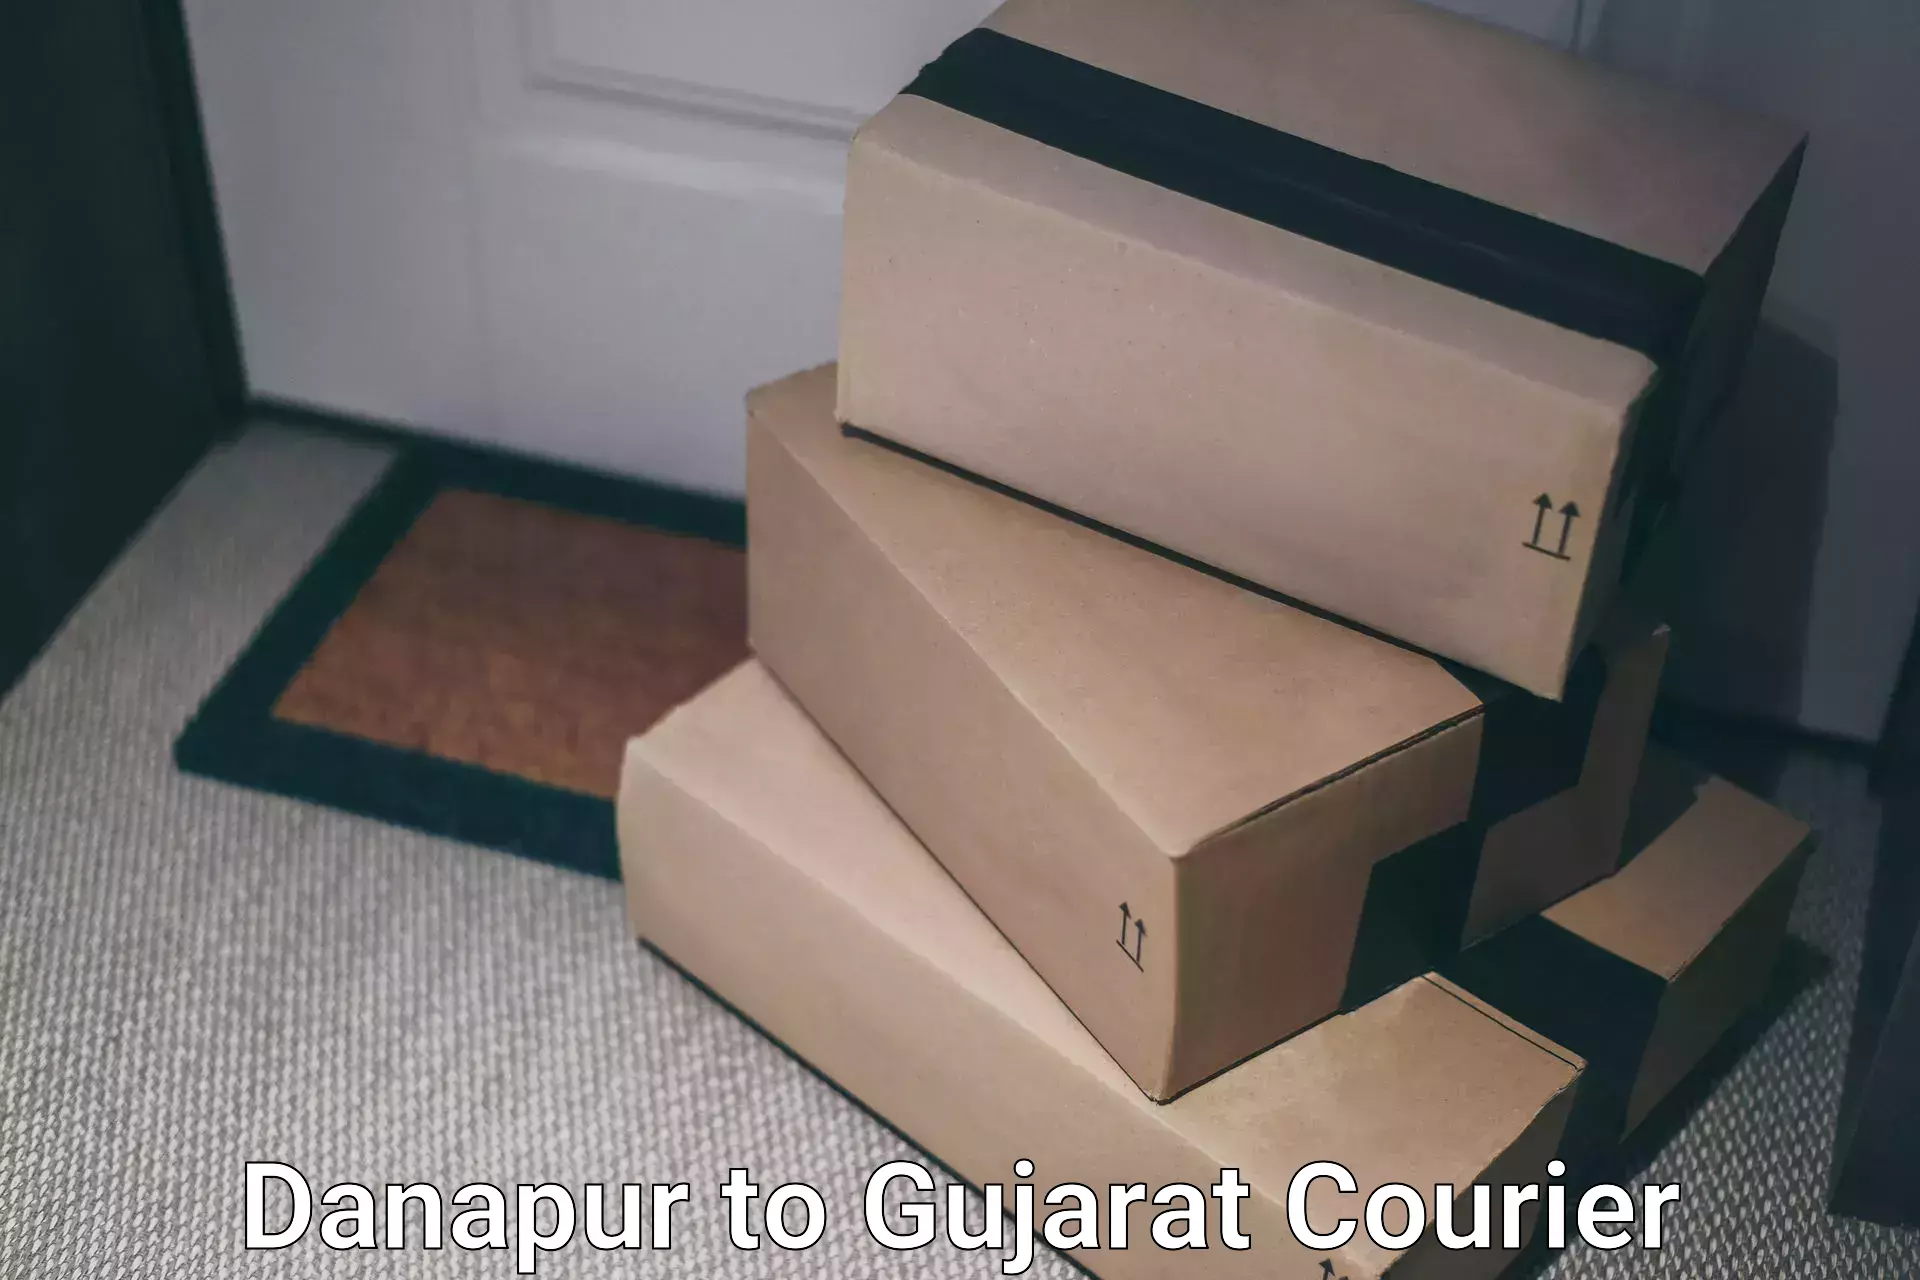 User-friendly courier app Danapur to Mandvi